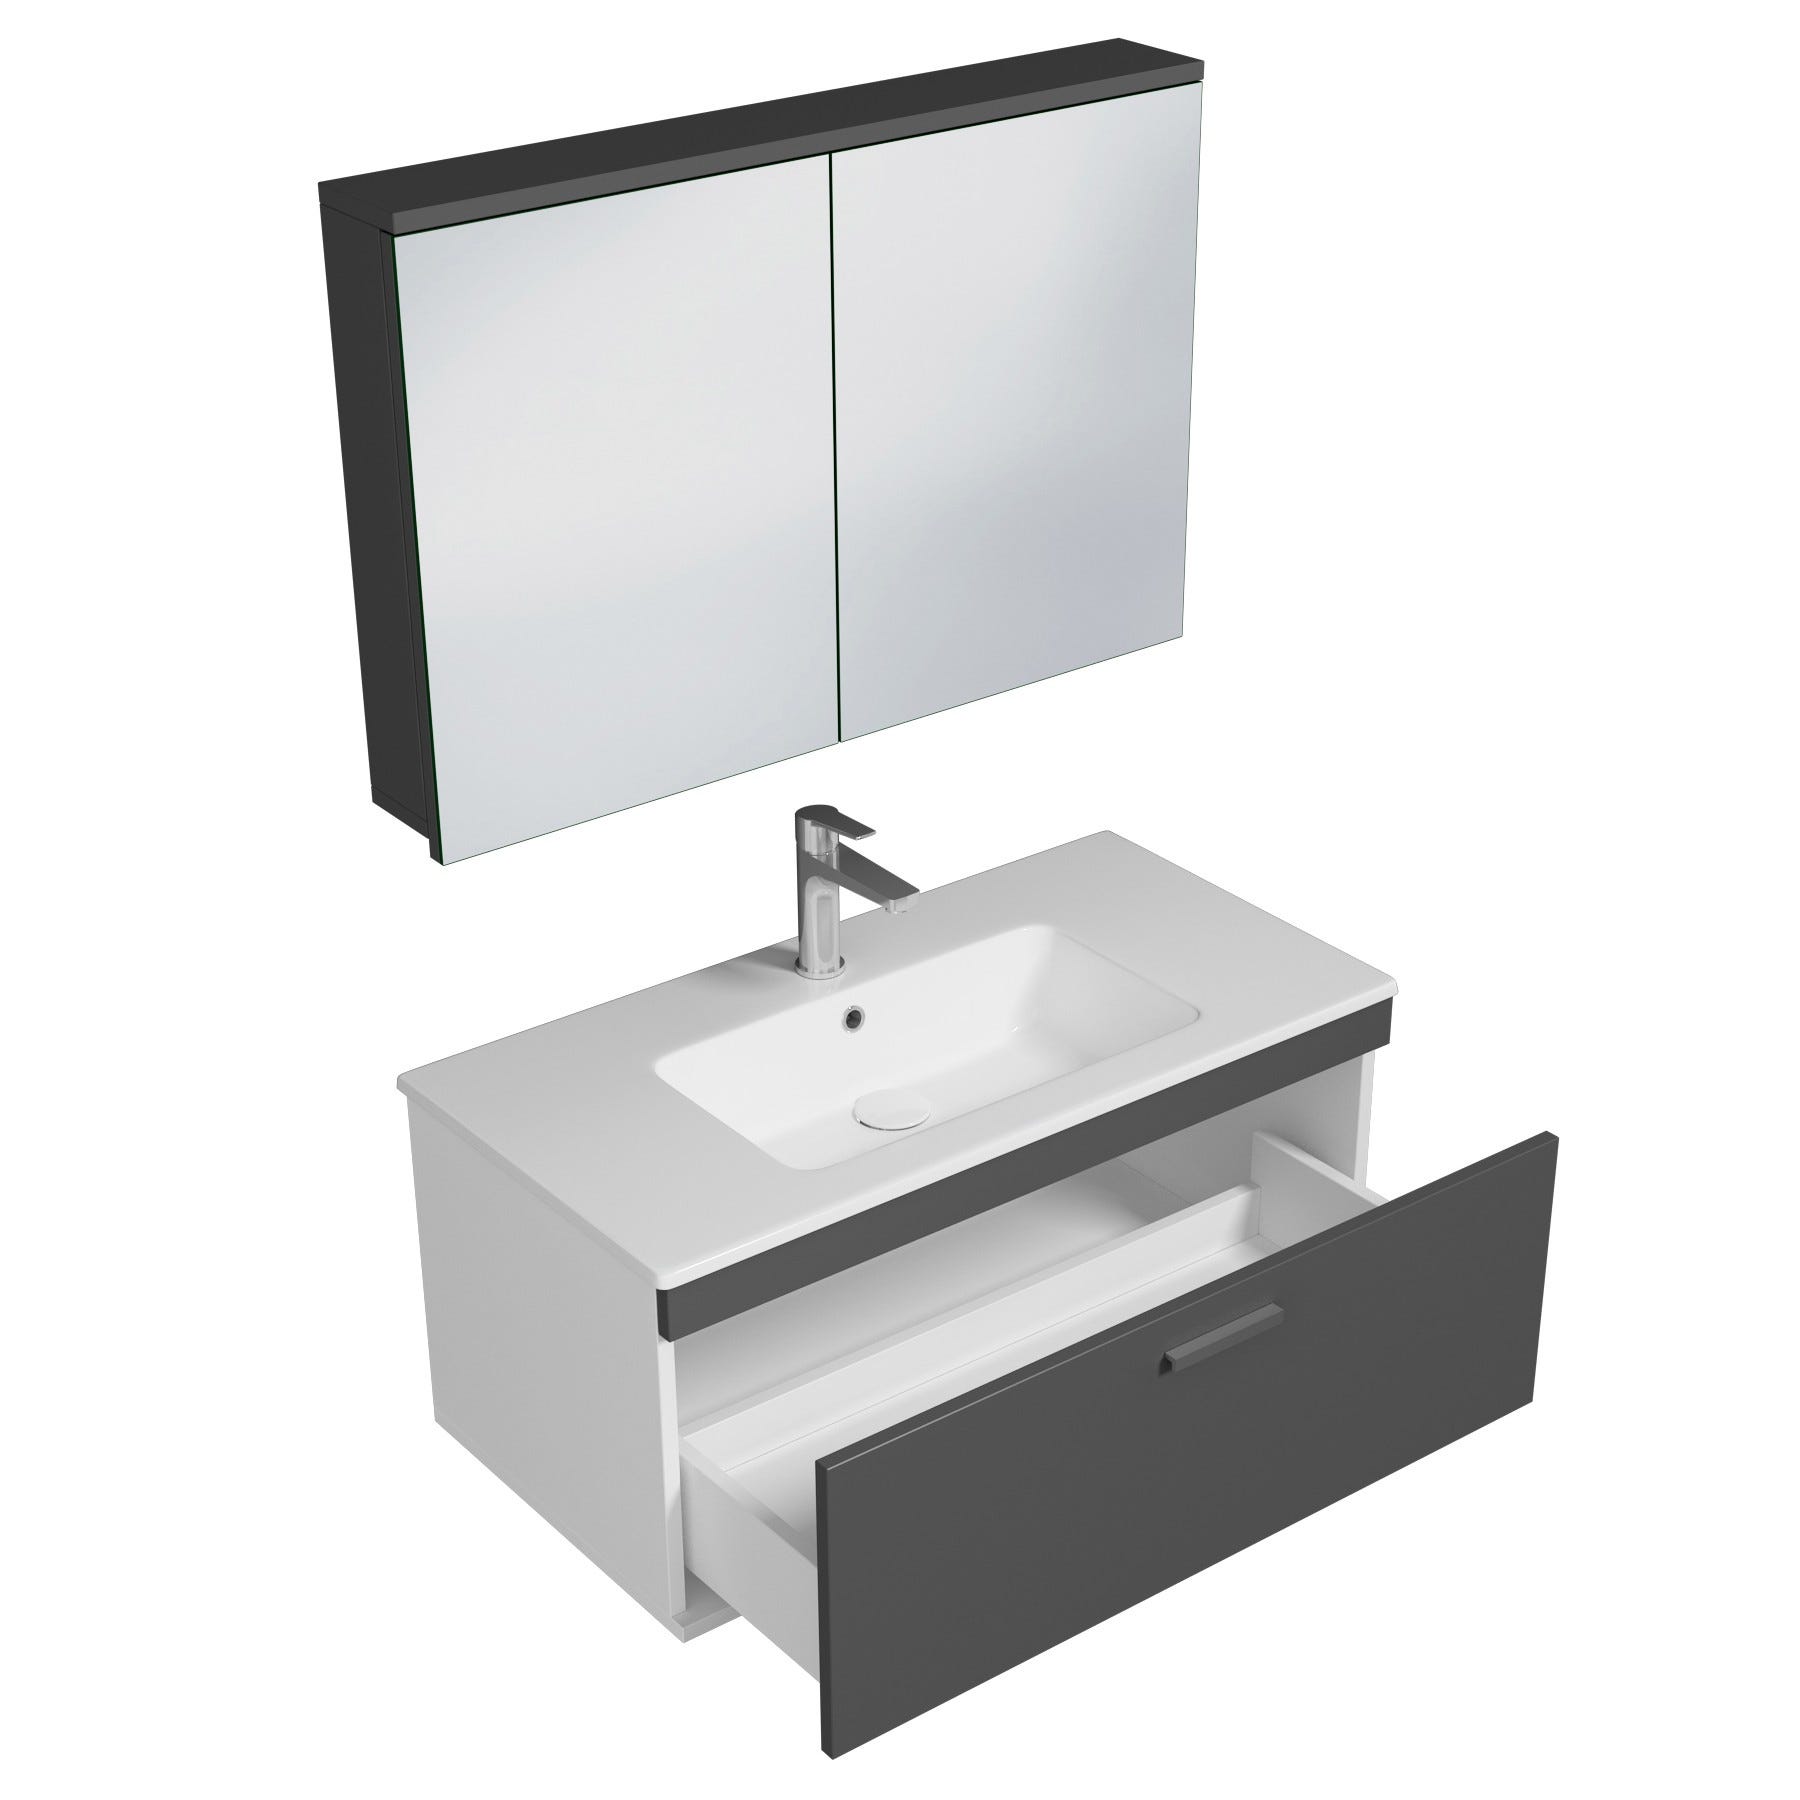 RUBITE Meuble salle de bain simple vasque 1 tiroir gris anthracite largeur 100 cm + miroir armoire 1